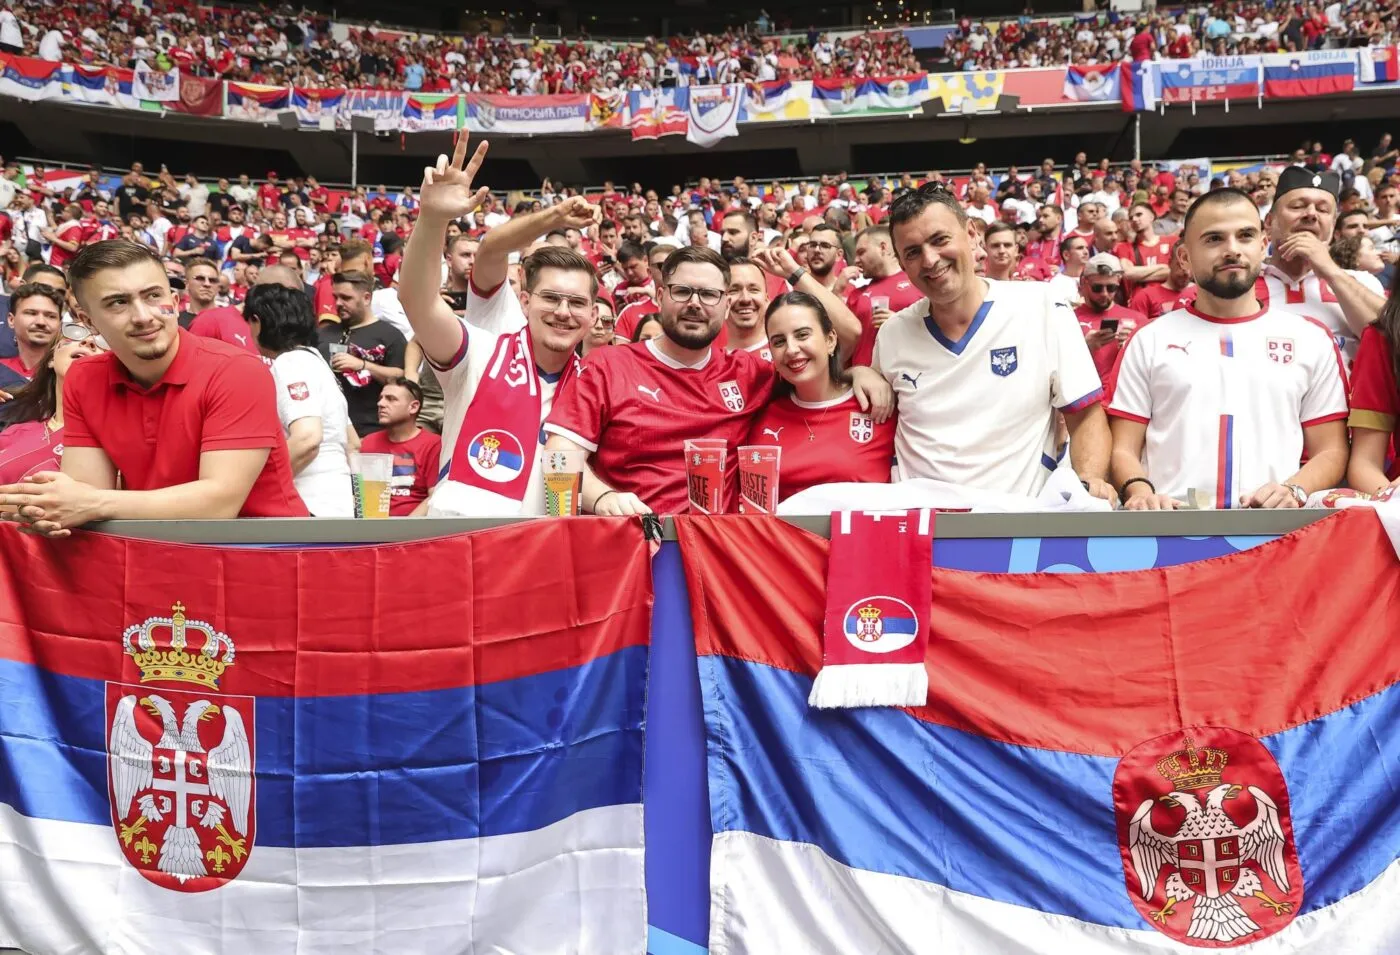 Des supporters serbes entonnent des chants anti Kosovo avant le match contre la Slovénie